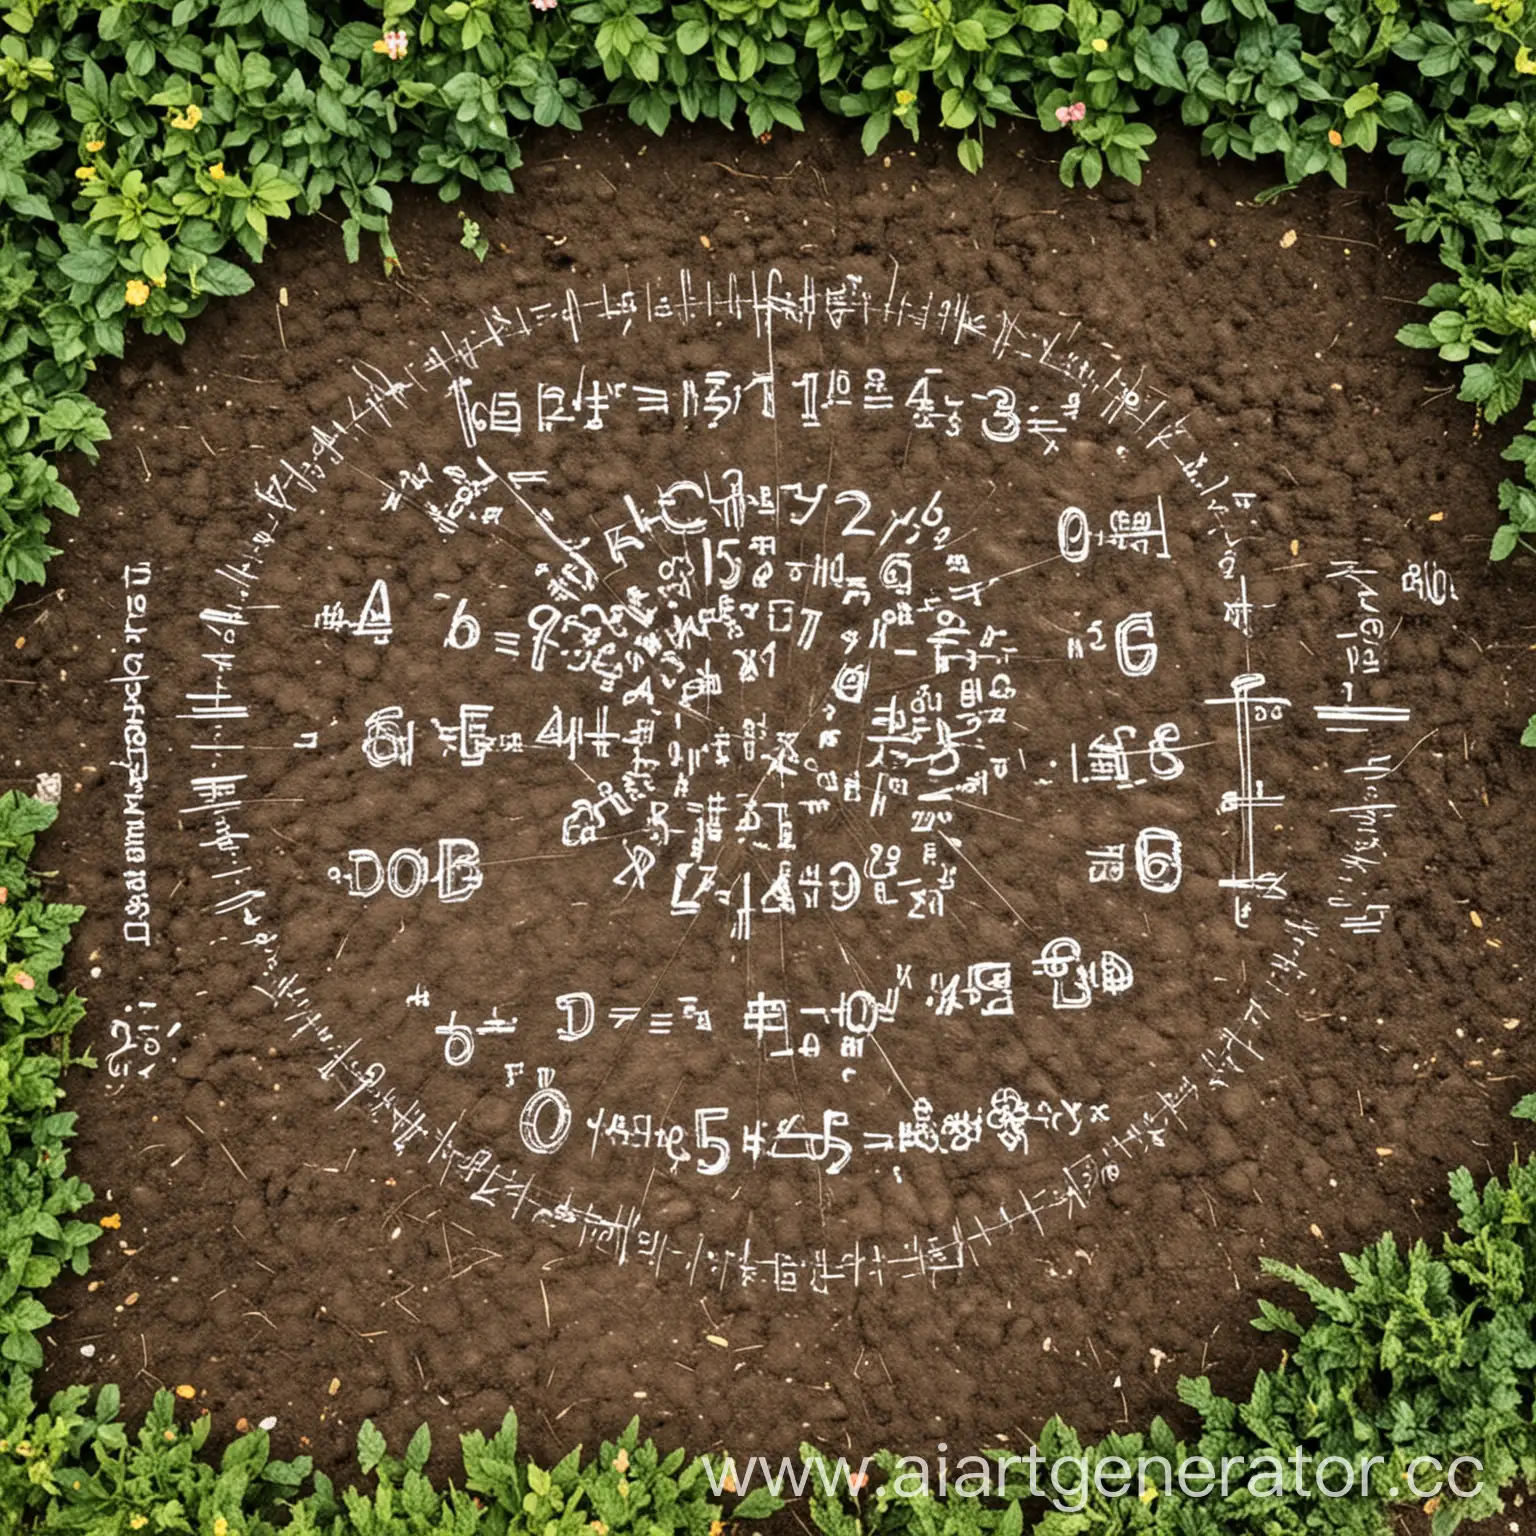 Mathematics on the garden plot